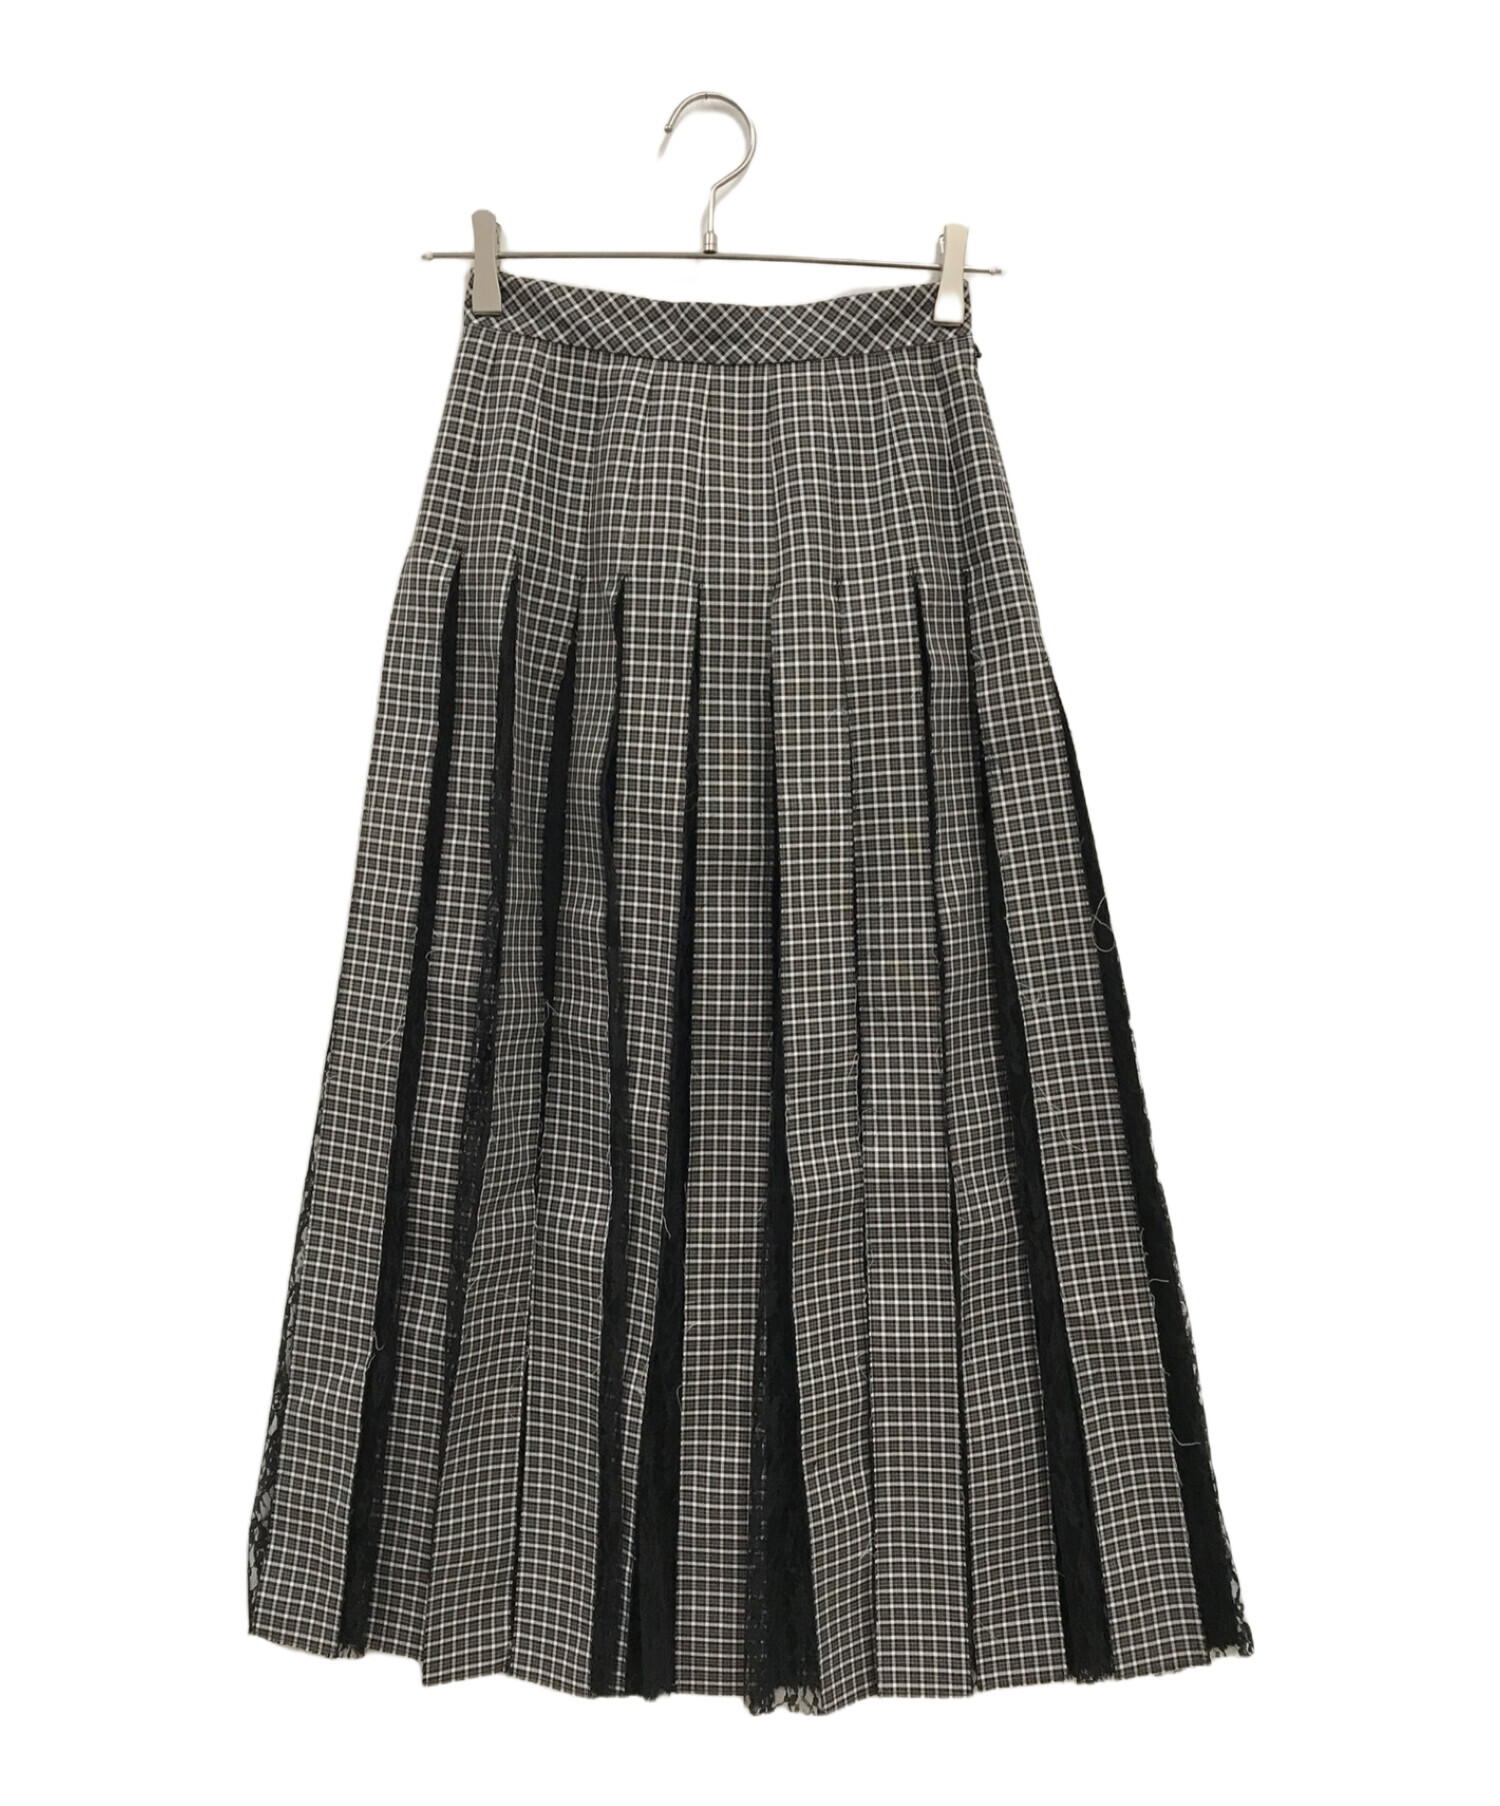 IRENE (アイレネ) Woven Check Lace Skirt/20A87003 ブラック サイズ:34